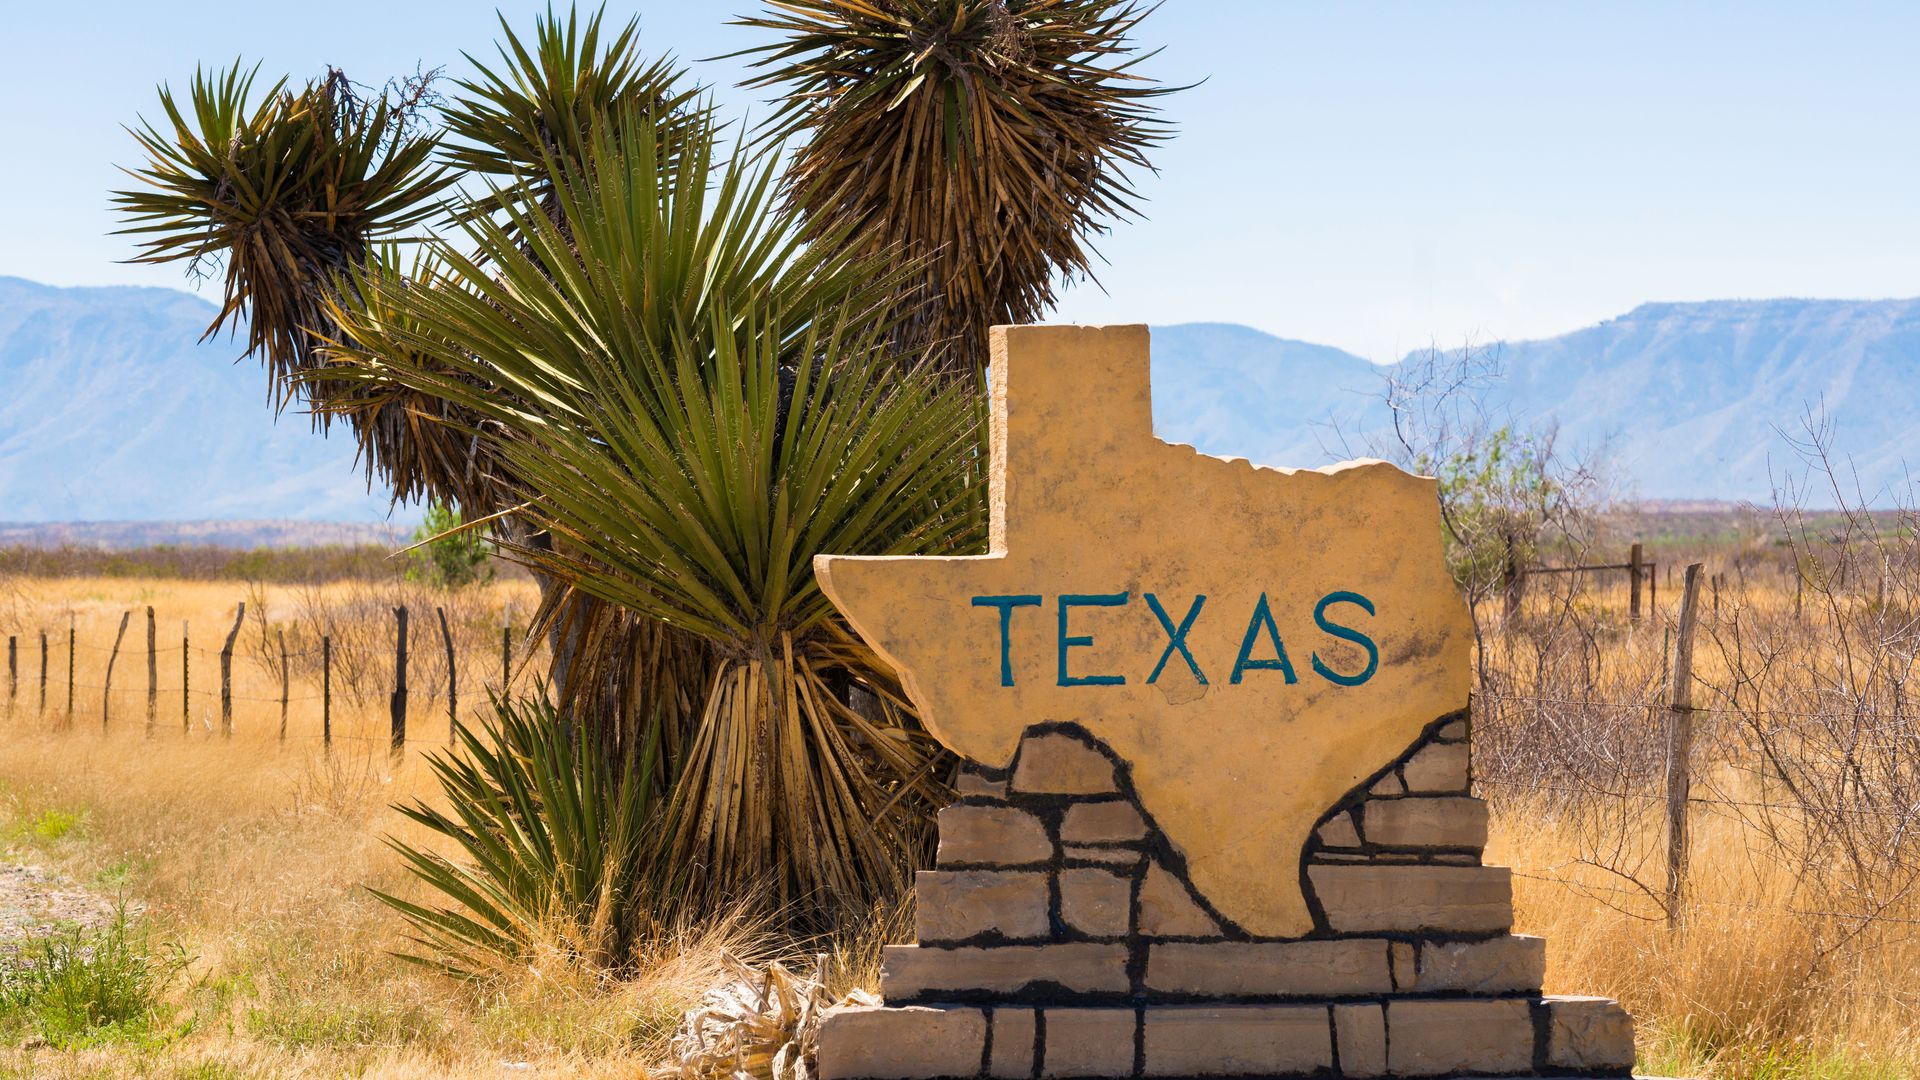 Visit the 7 unique regions of Texas